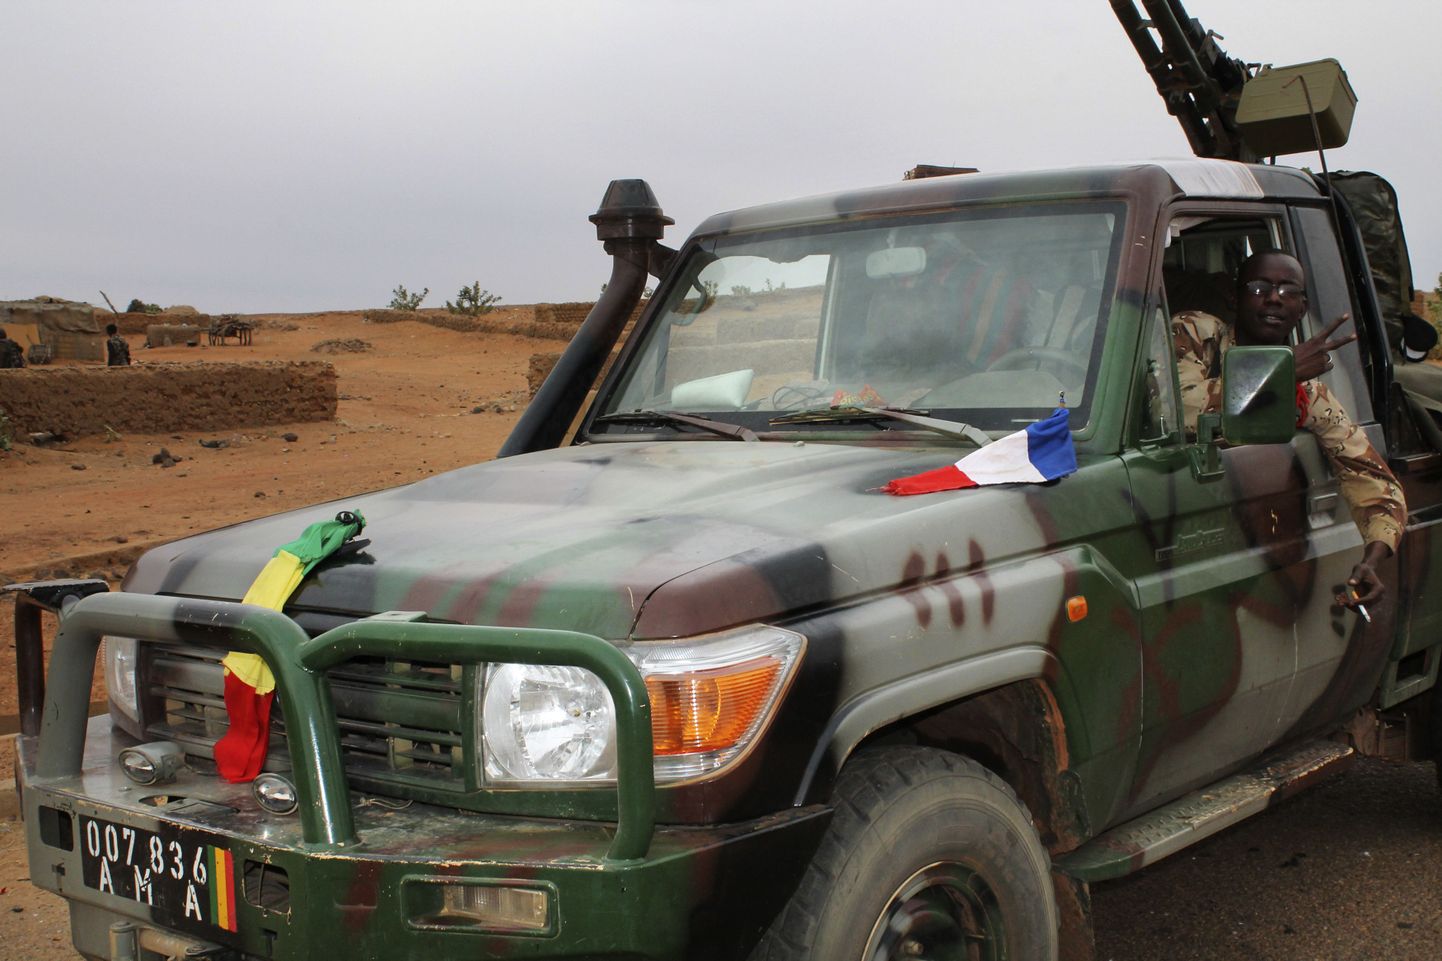 Mali sõdur istub militaaarsõidukis.